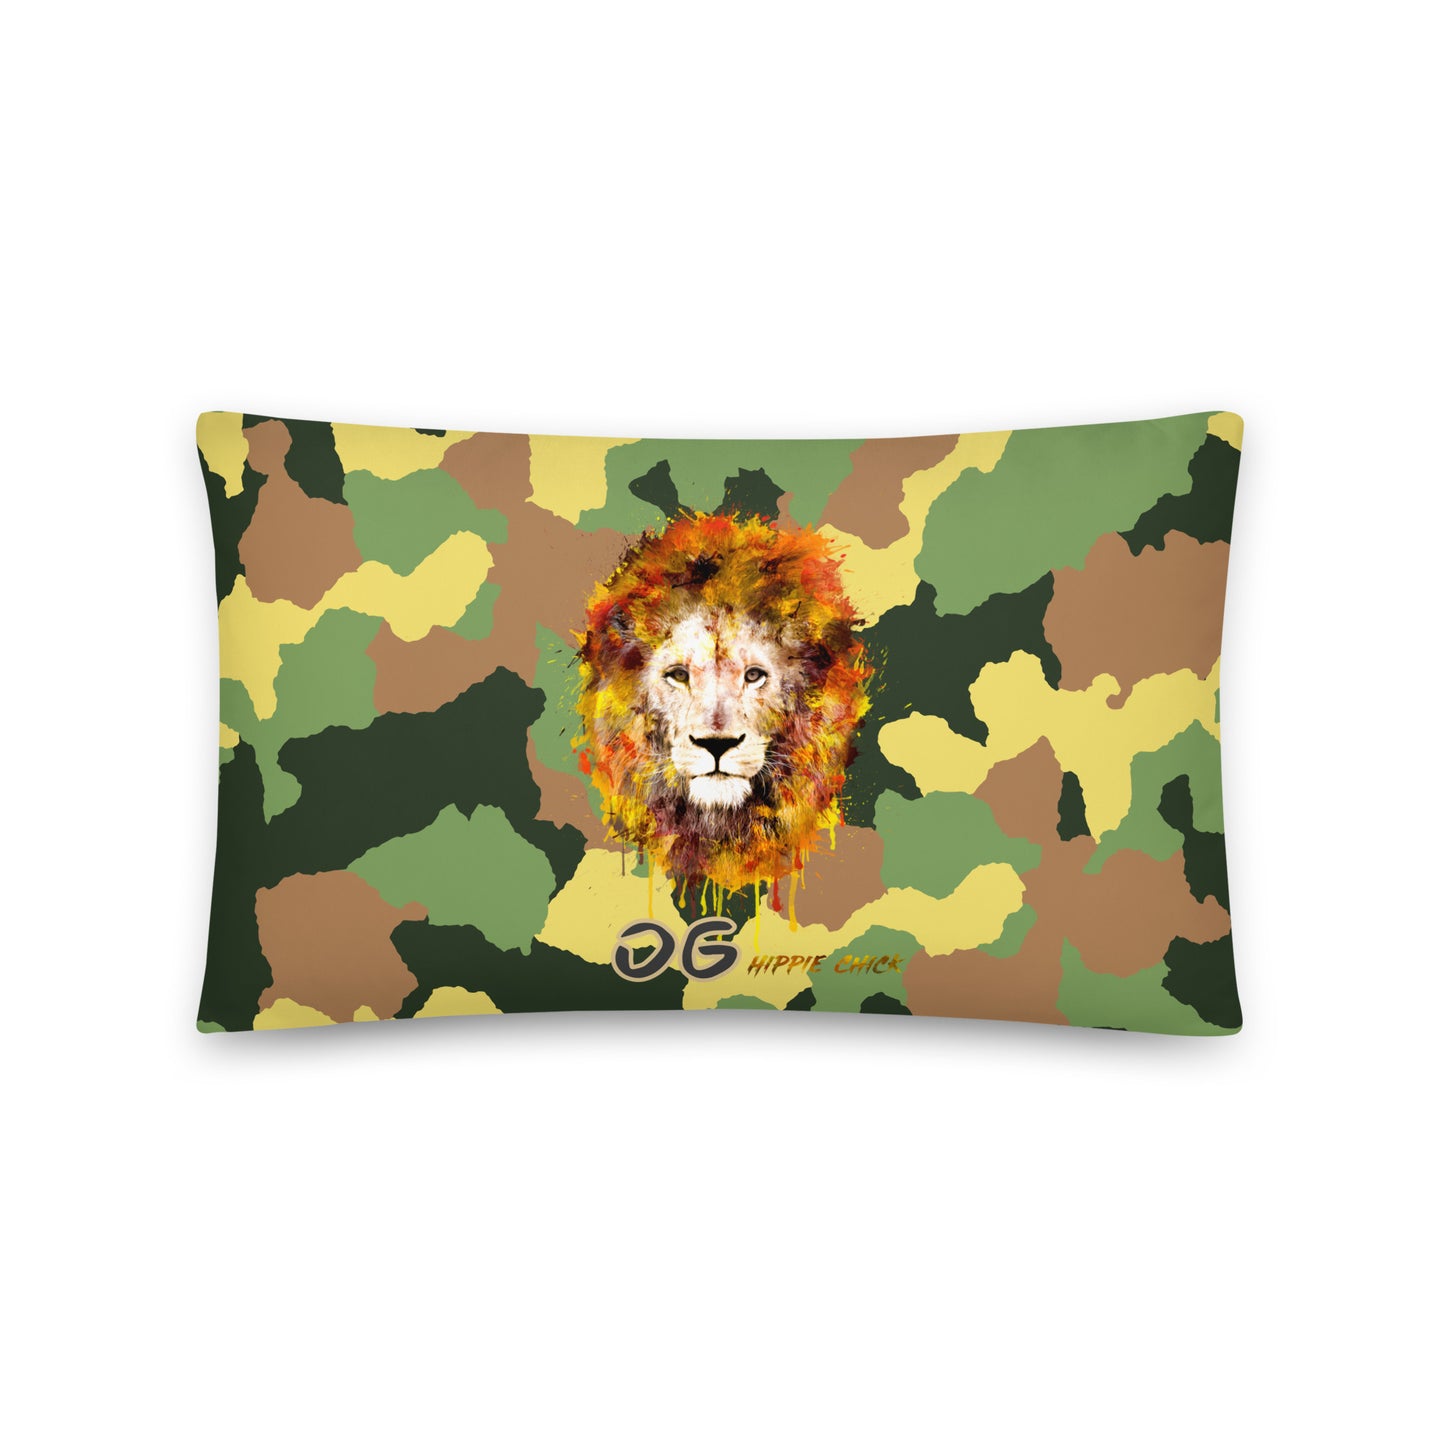 Army Camo Pillows